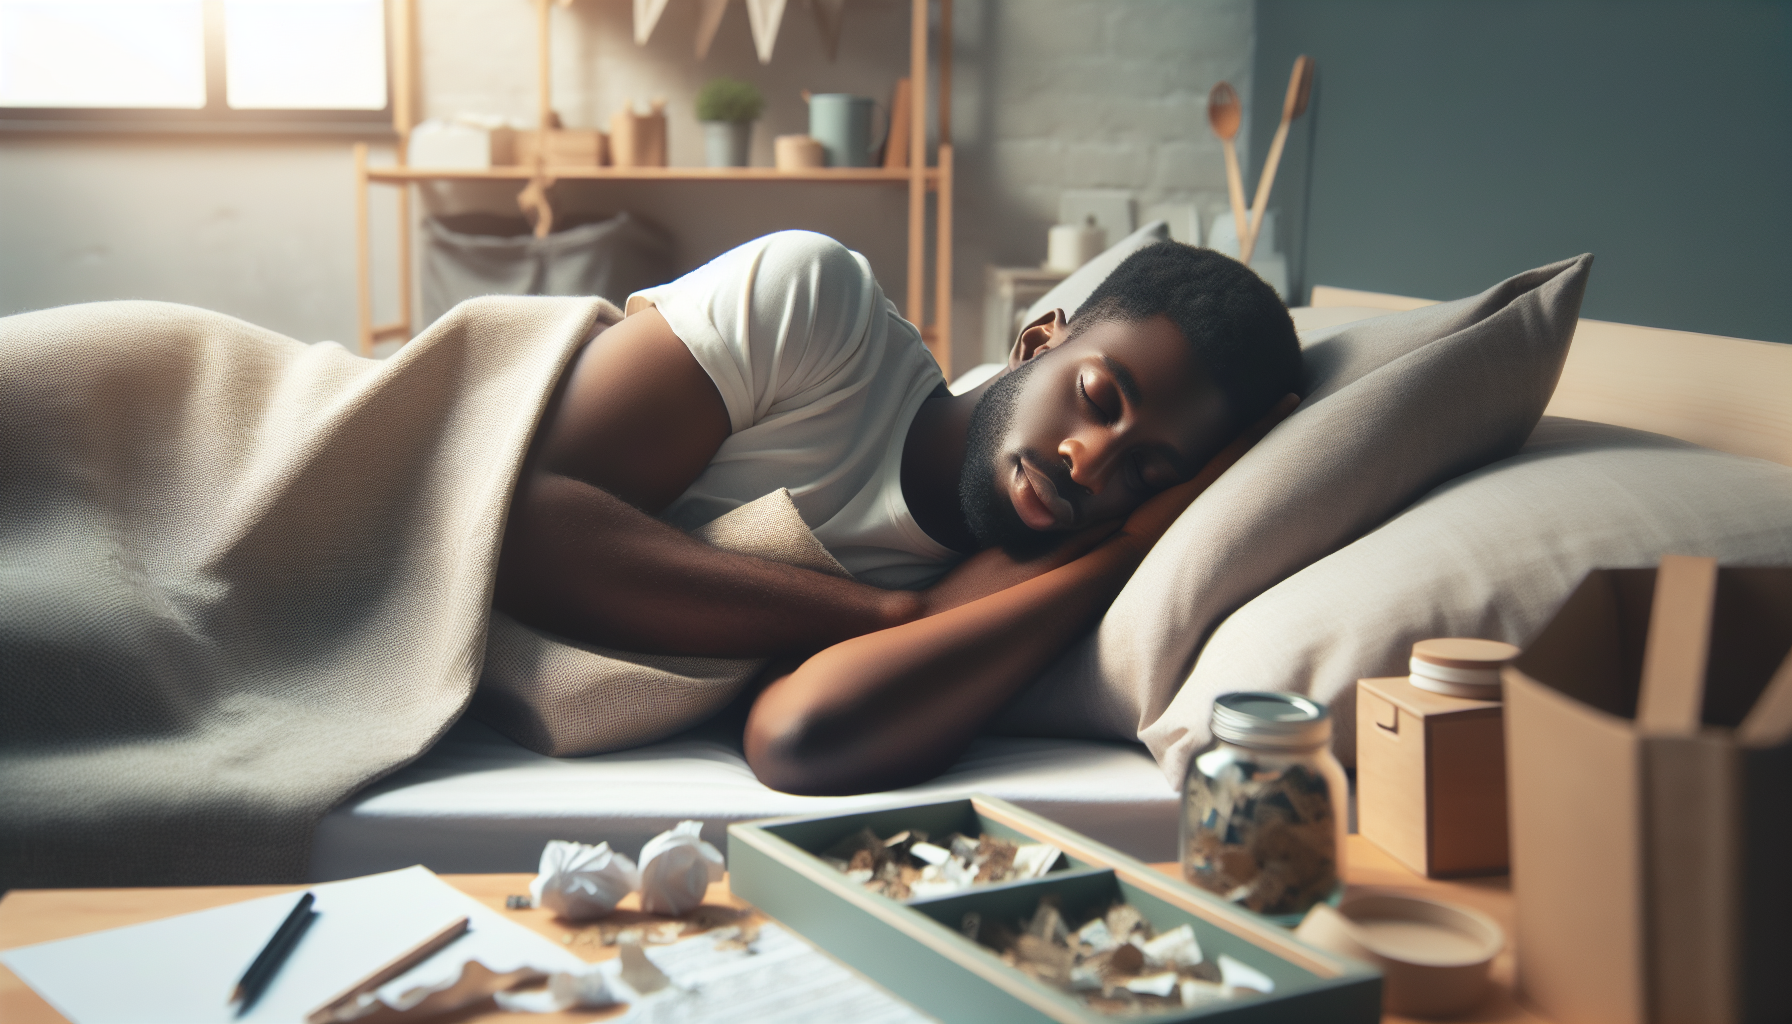 Sleeping Positions That Help With Sleep Apnea